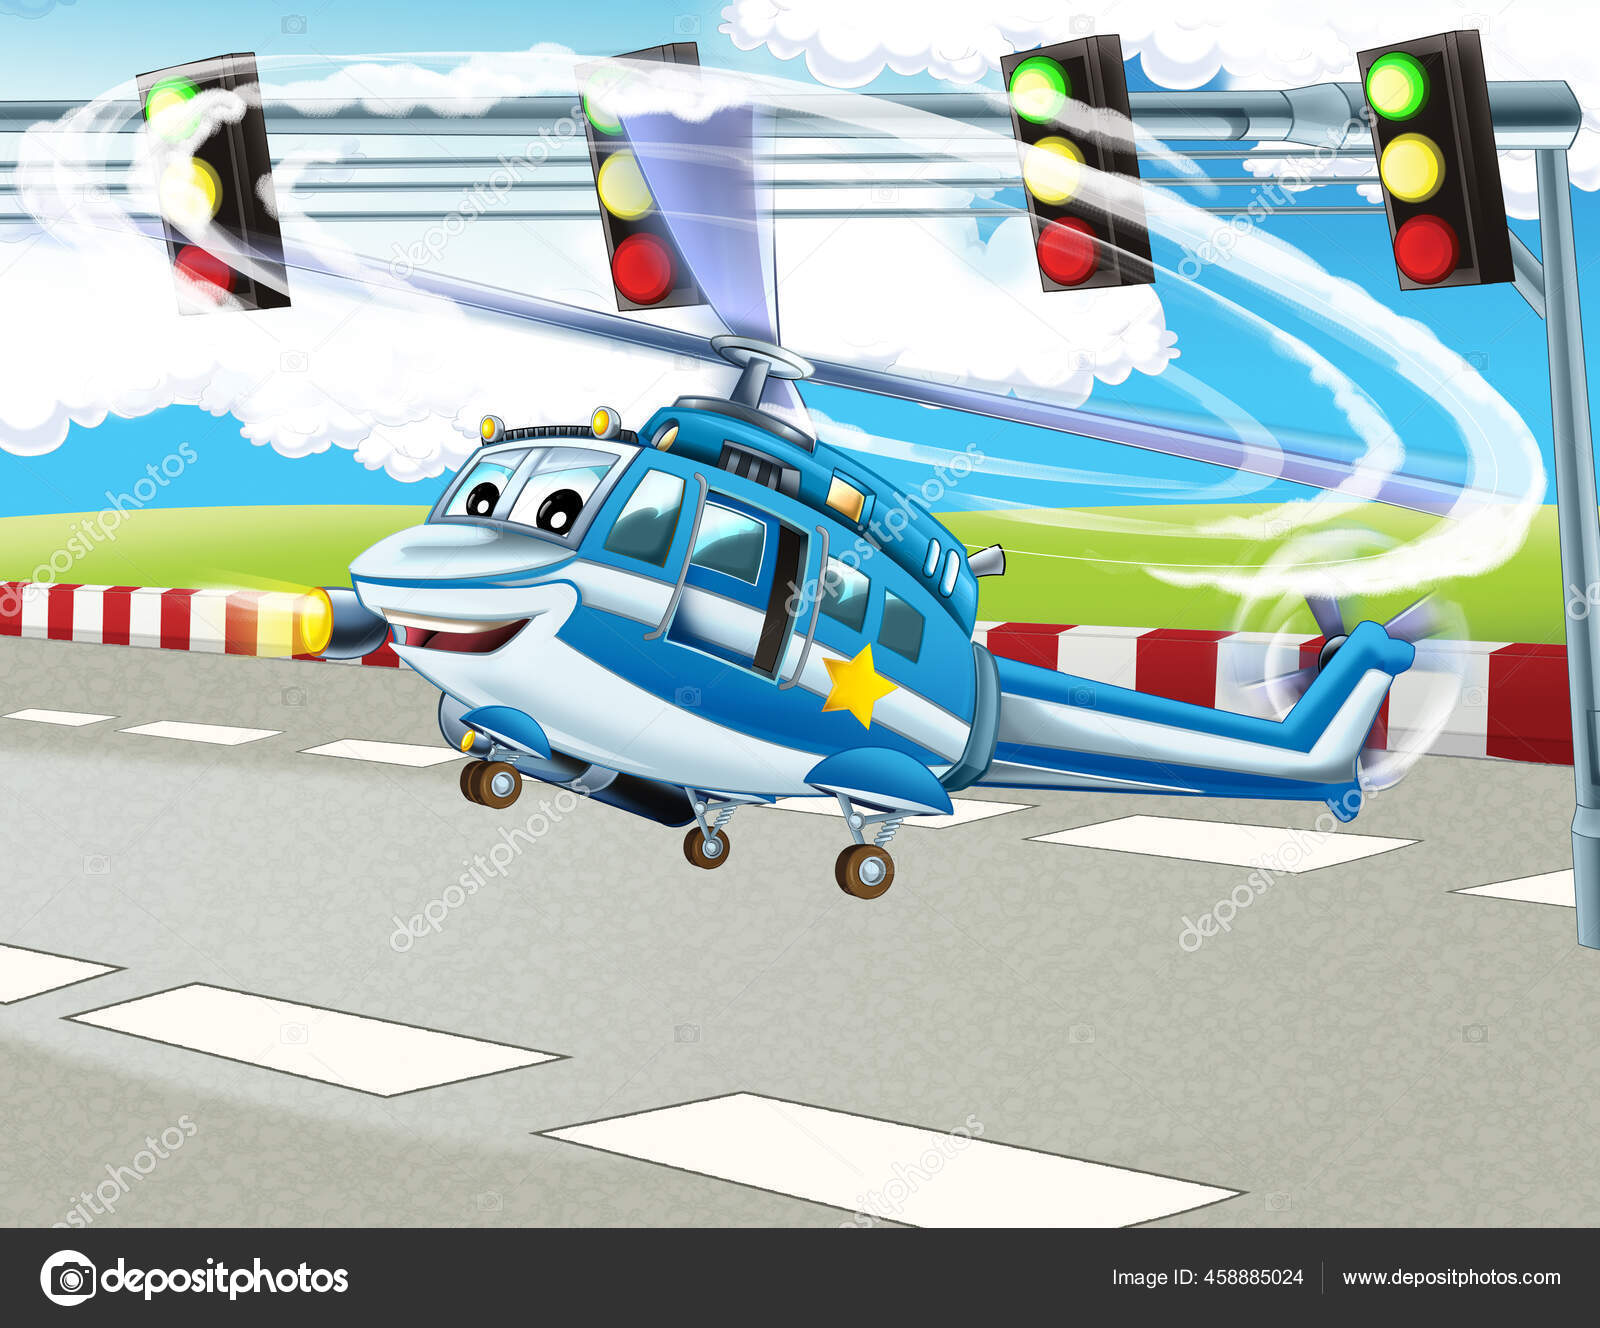 Adegan Kartun Dengan Helikopter Bahagia Terbang Kota Ilustrasi Untuk Anak Stok Foto C Illustrator Hft 458885024